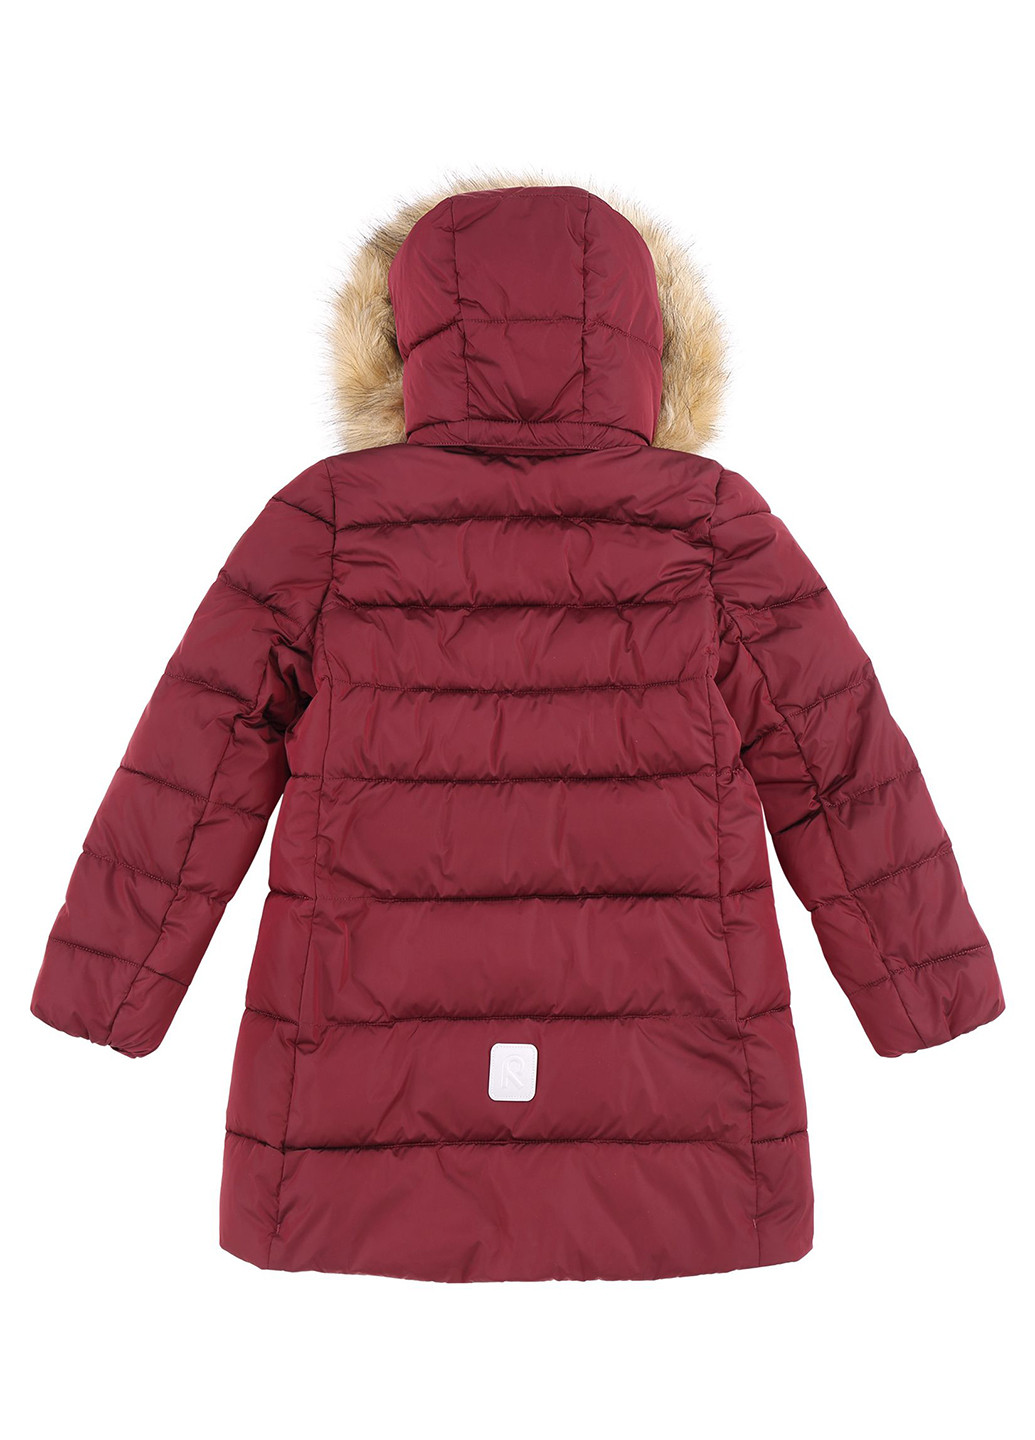 Бордовая зимняя куртка Reima Lunta